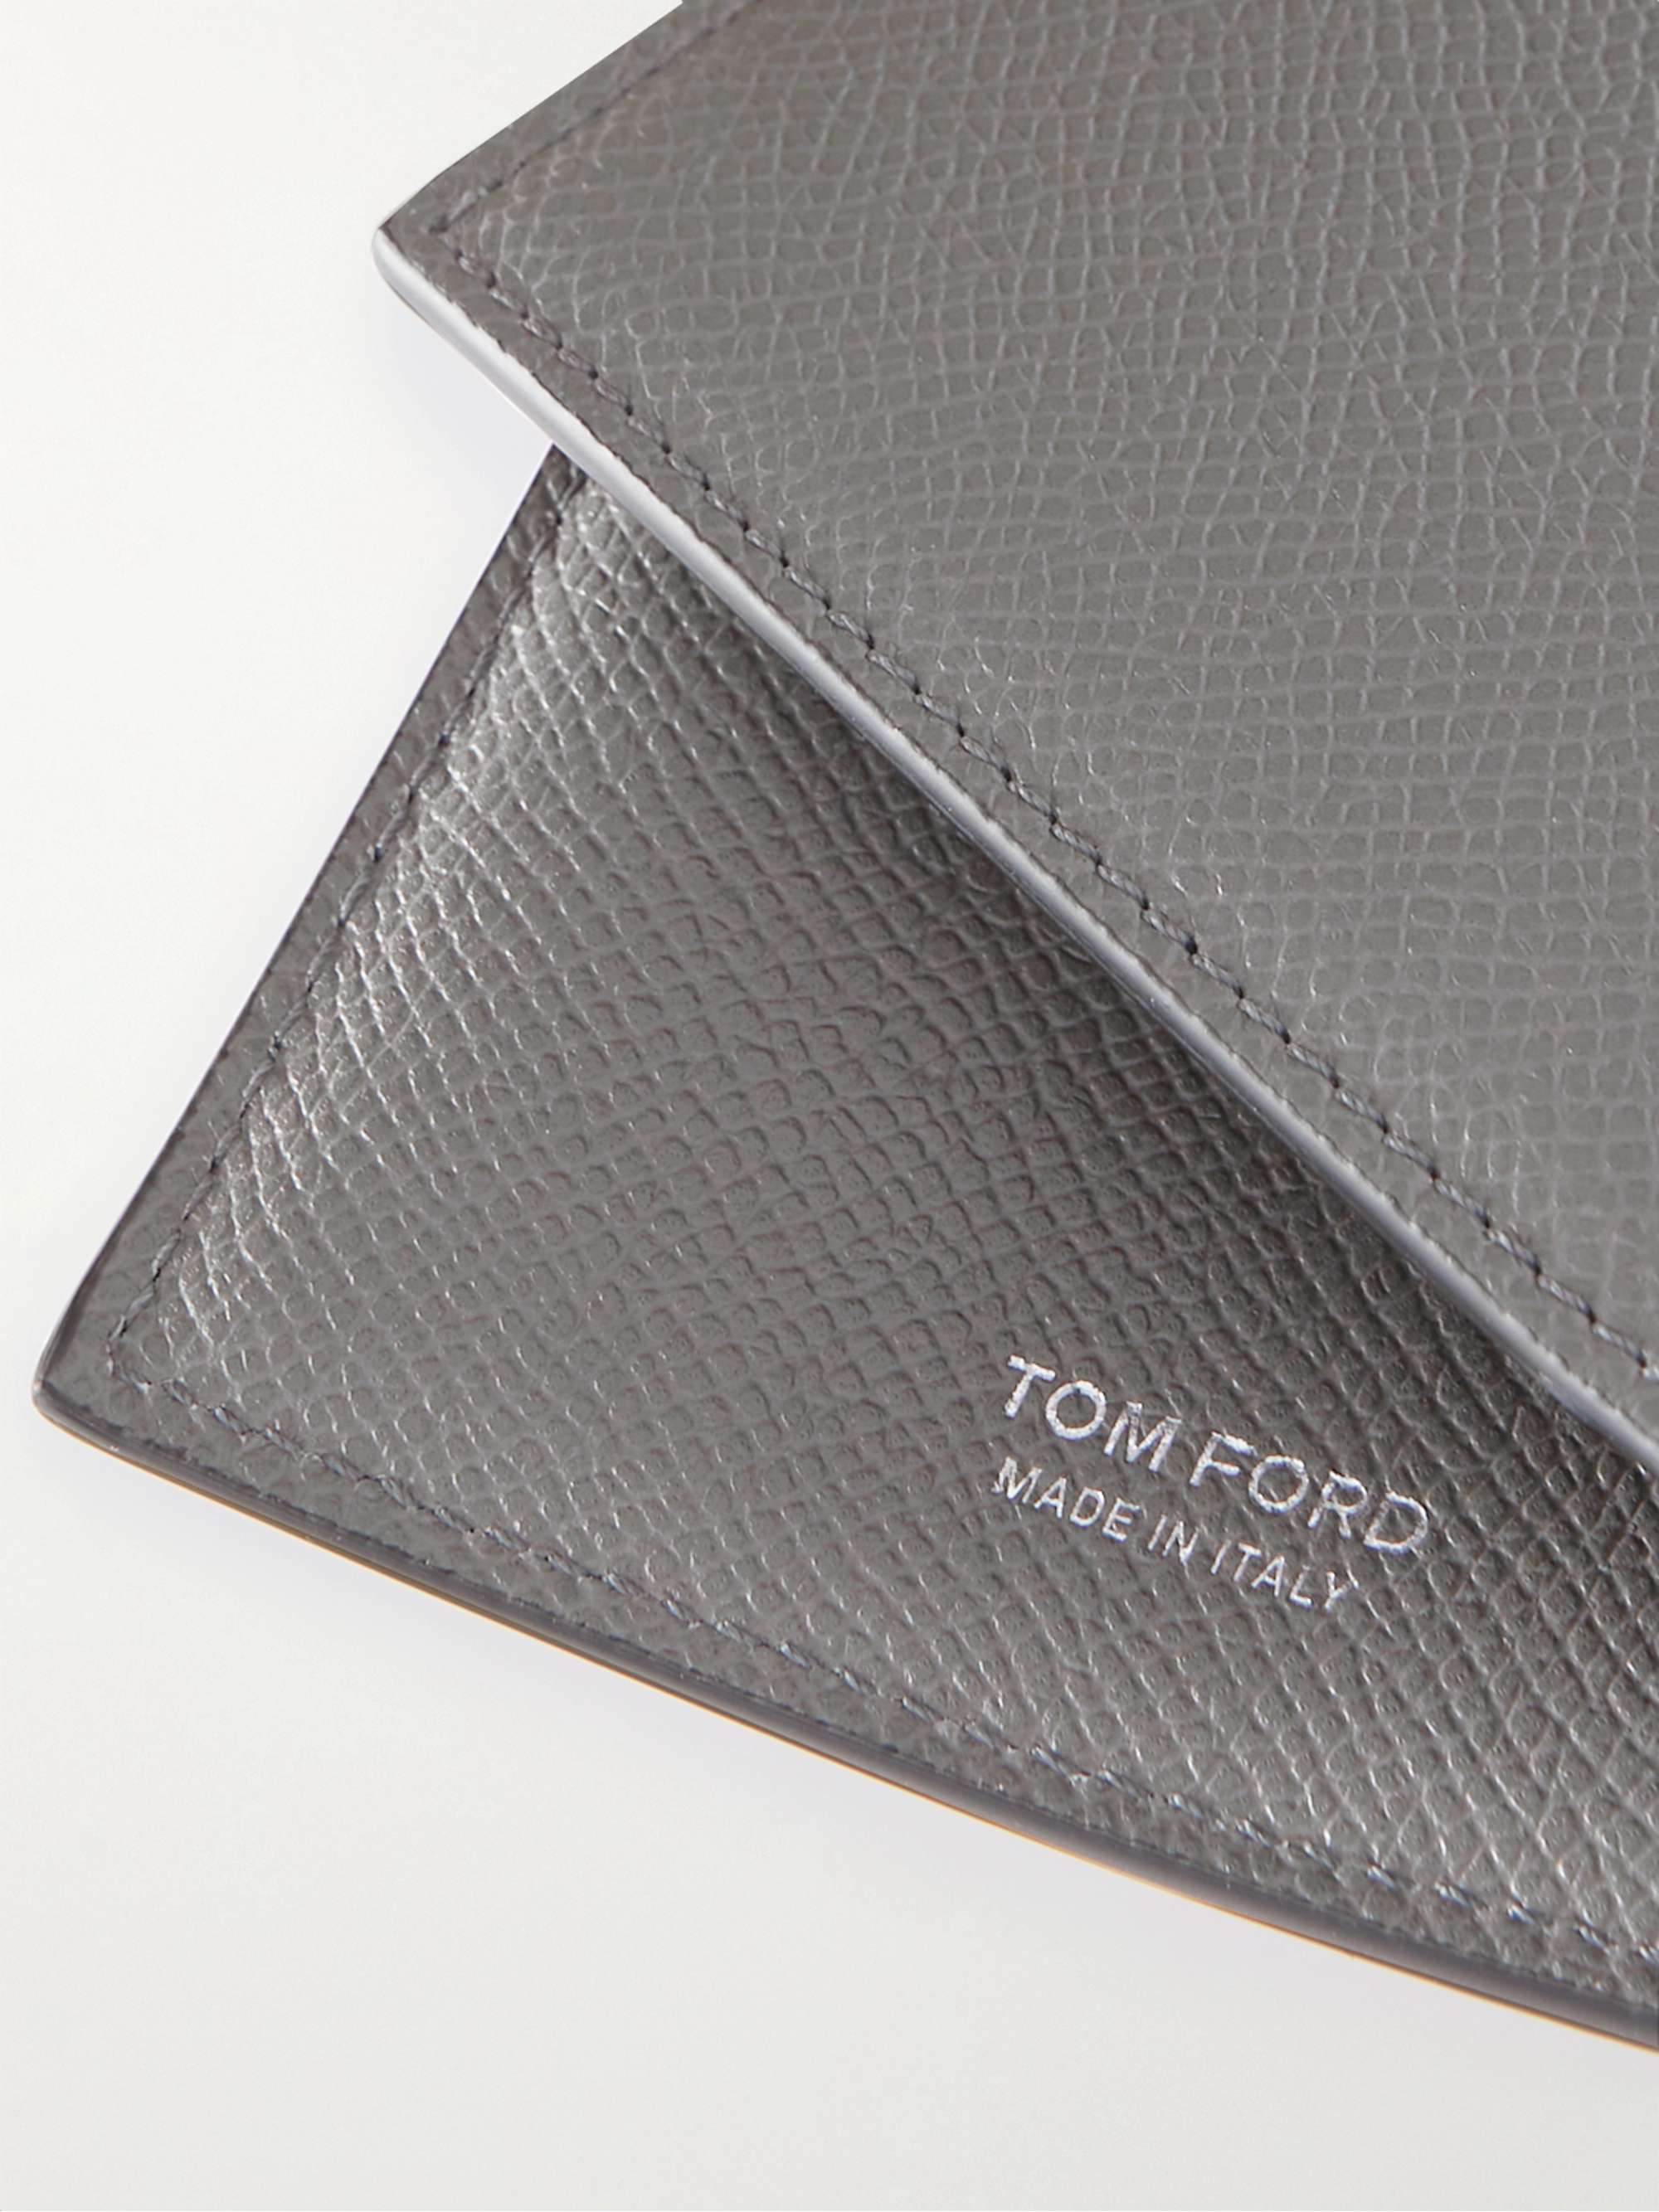 TOM FORD Full-Grain Leather Passport Cover